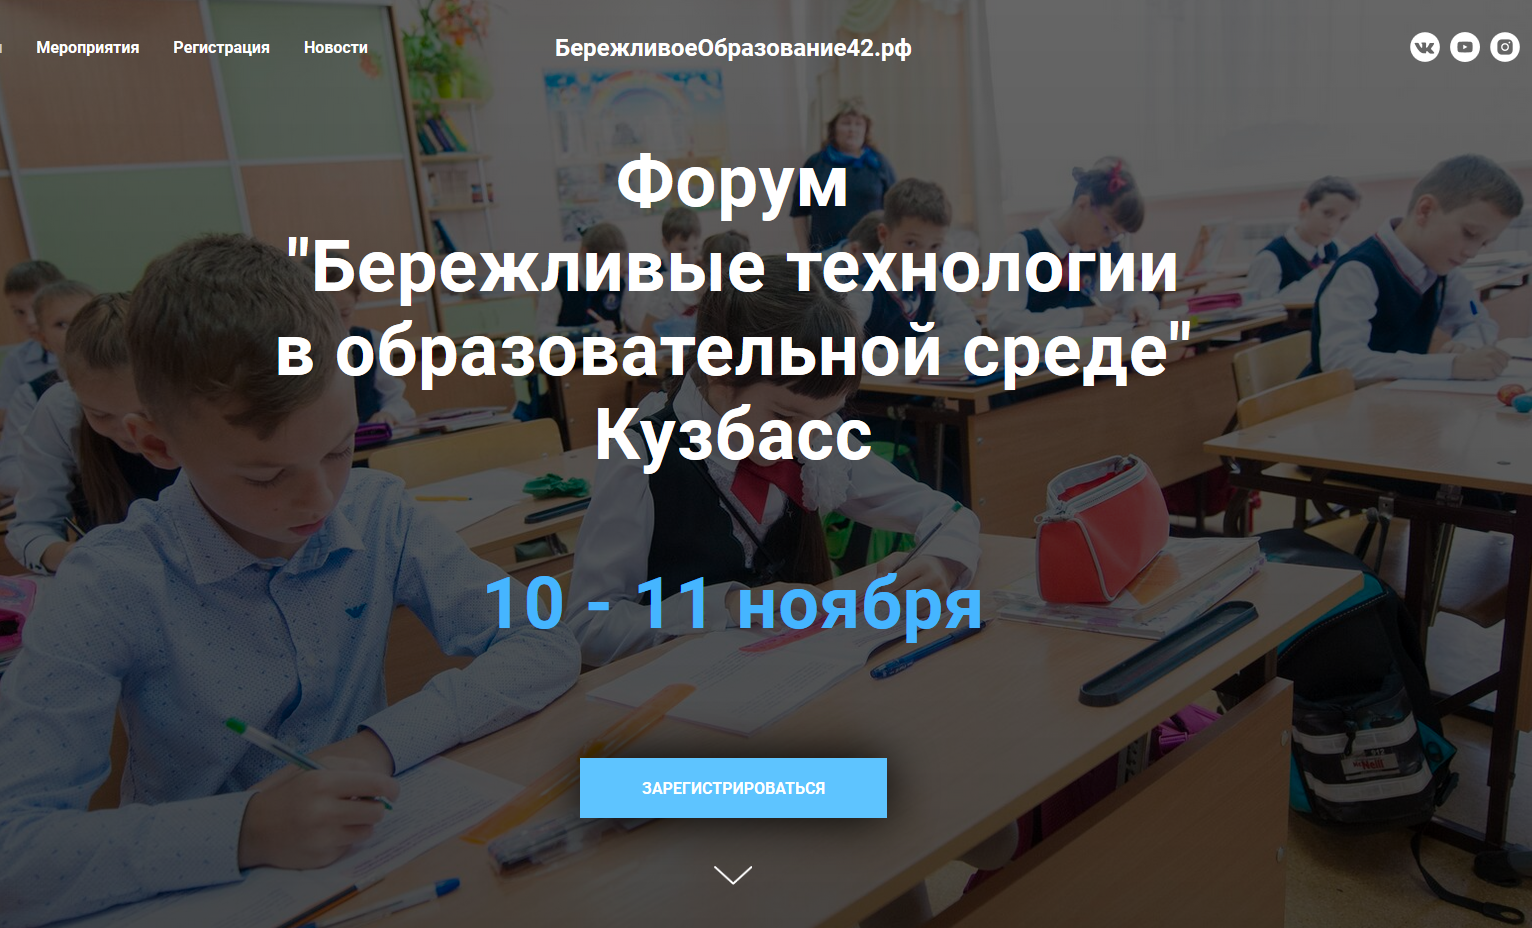 Всероссийский форум «Бережливые технологии в образовательной среде» пройдет в Кузбассе 10-11 ноября